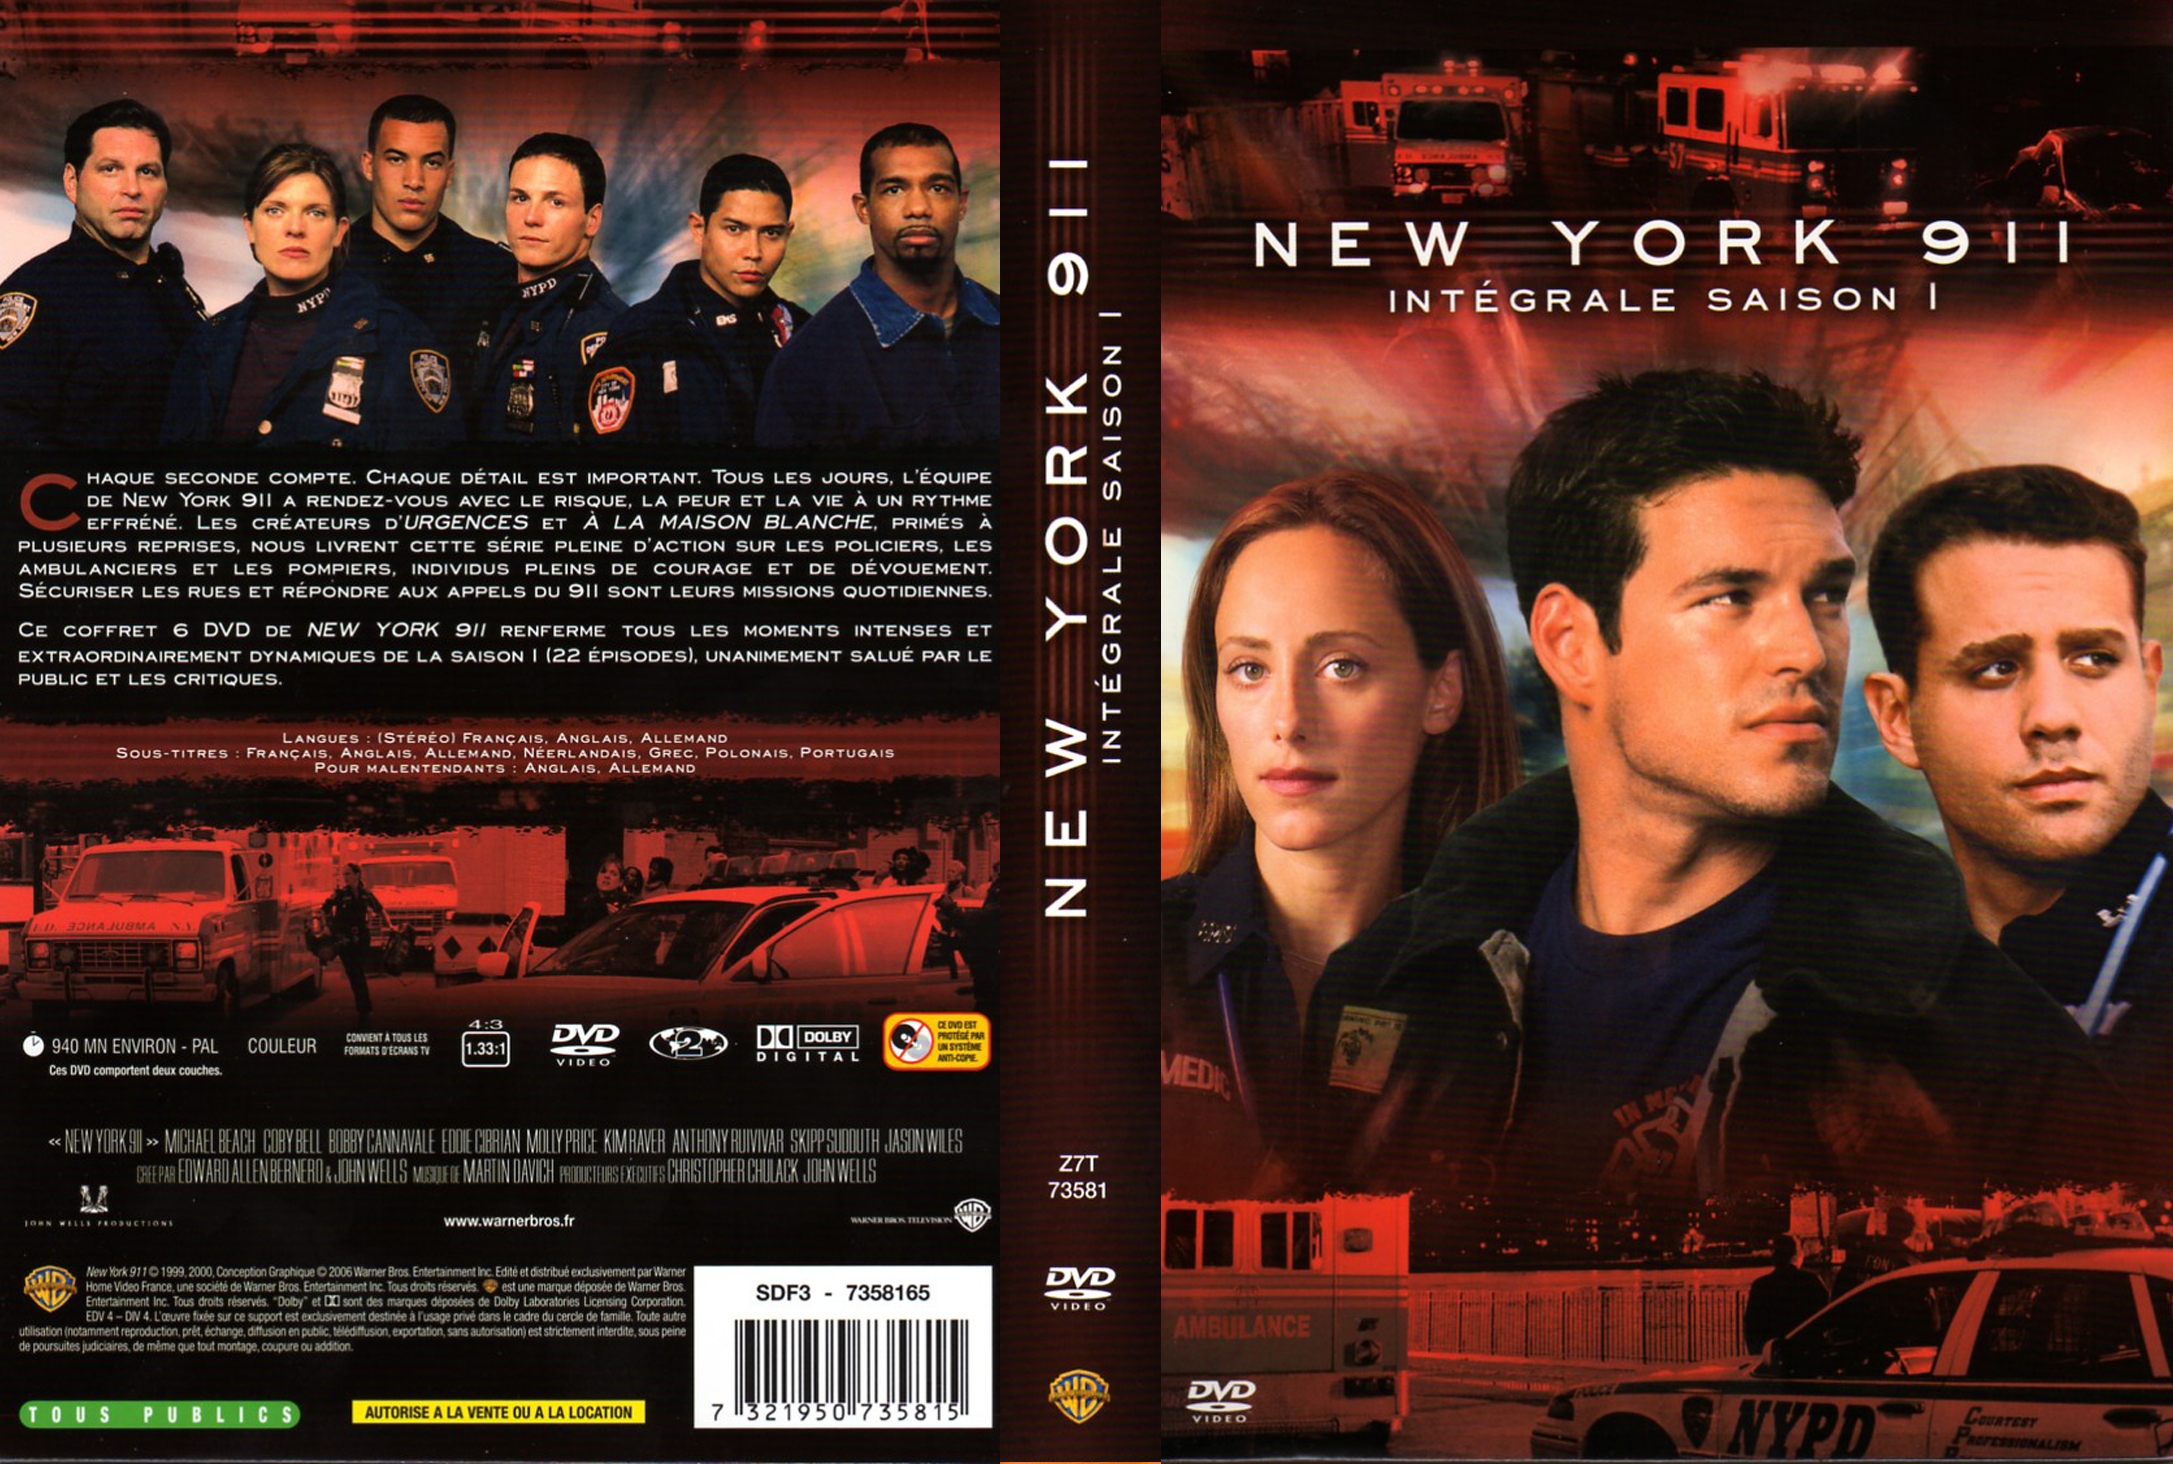 Jaquette DVD New York 911 saison 1 COFFRET